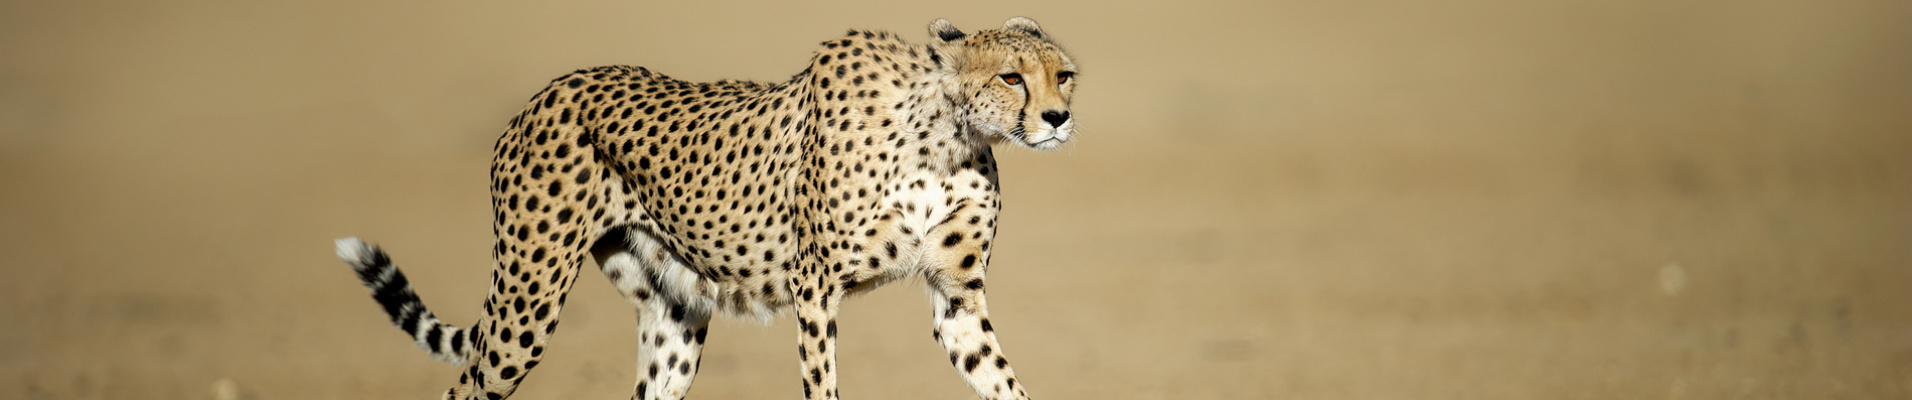 guepard-parc-kgalagadi-afrique-du-sud